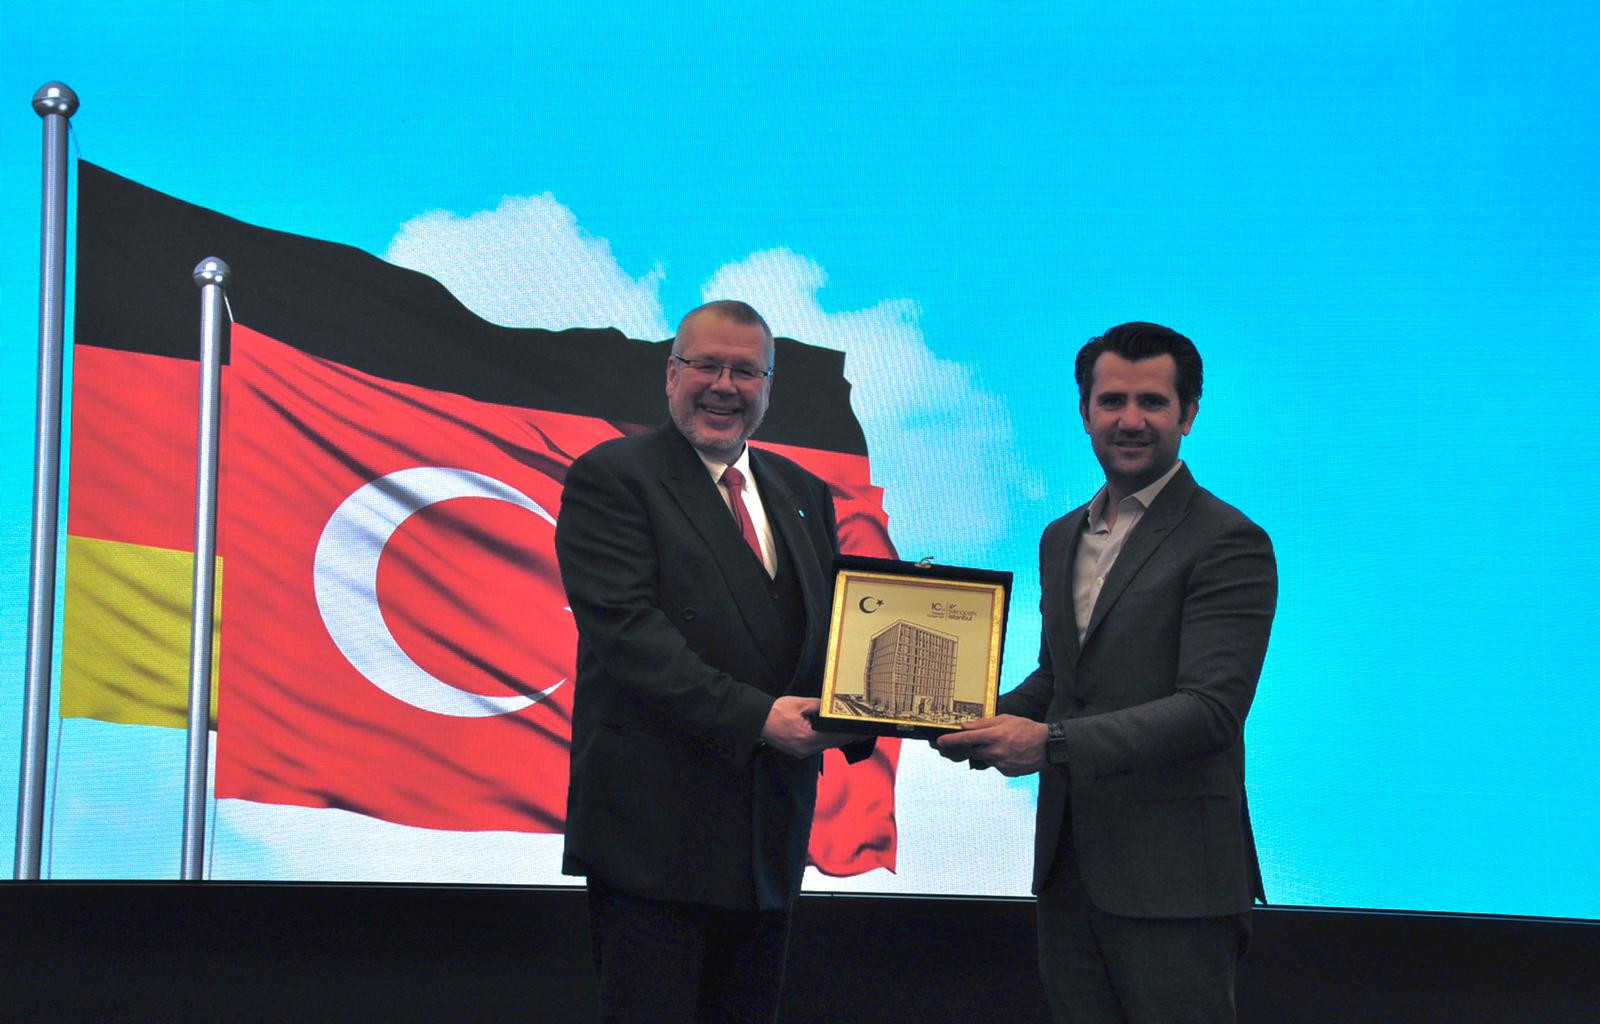 Alman Milletvekili ve T.C. Cumhurbaşkanlığı Yatırım Ofisi heyeti, Teknopark İstanbul'u ziyaret etti.